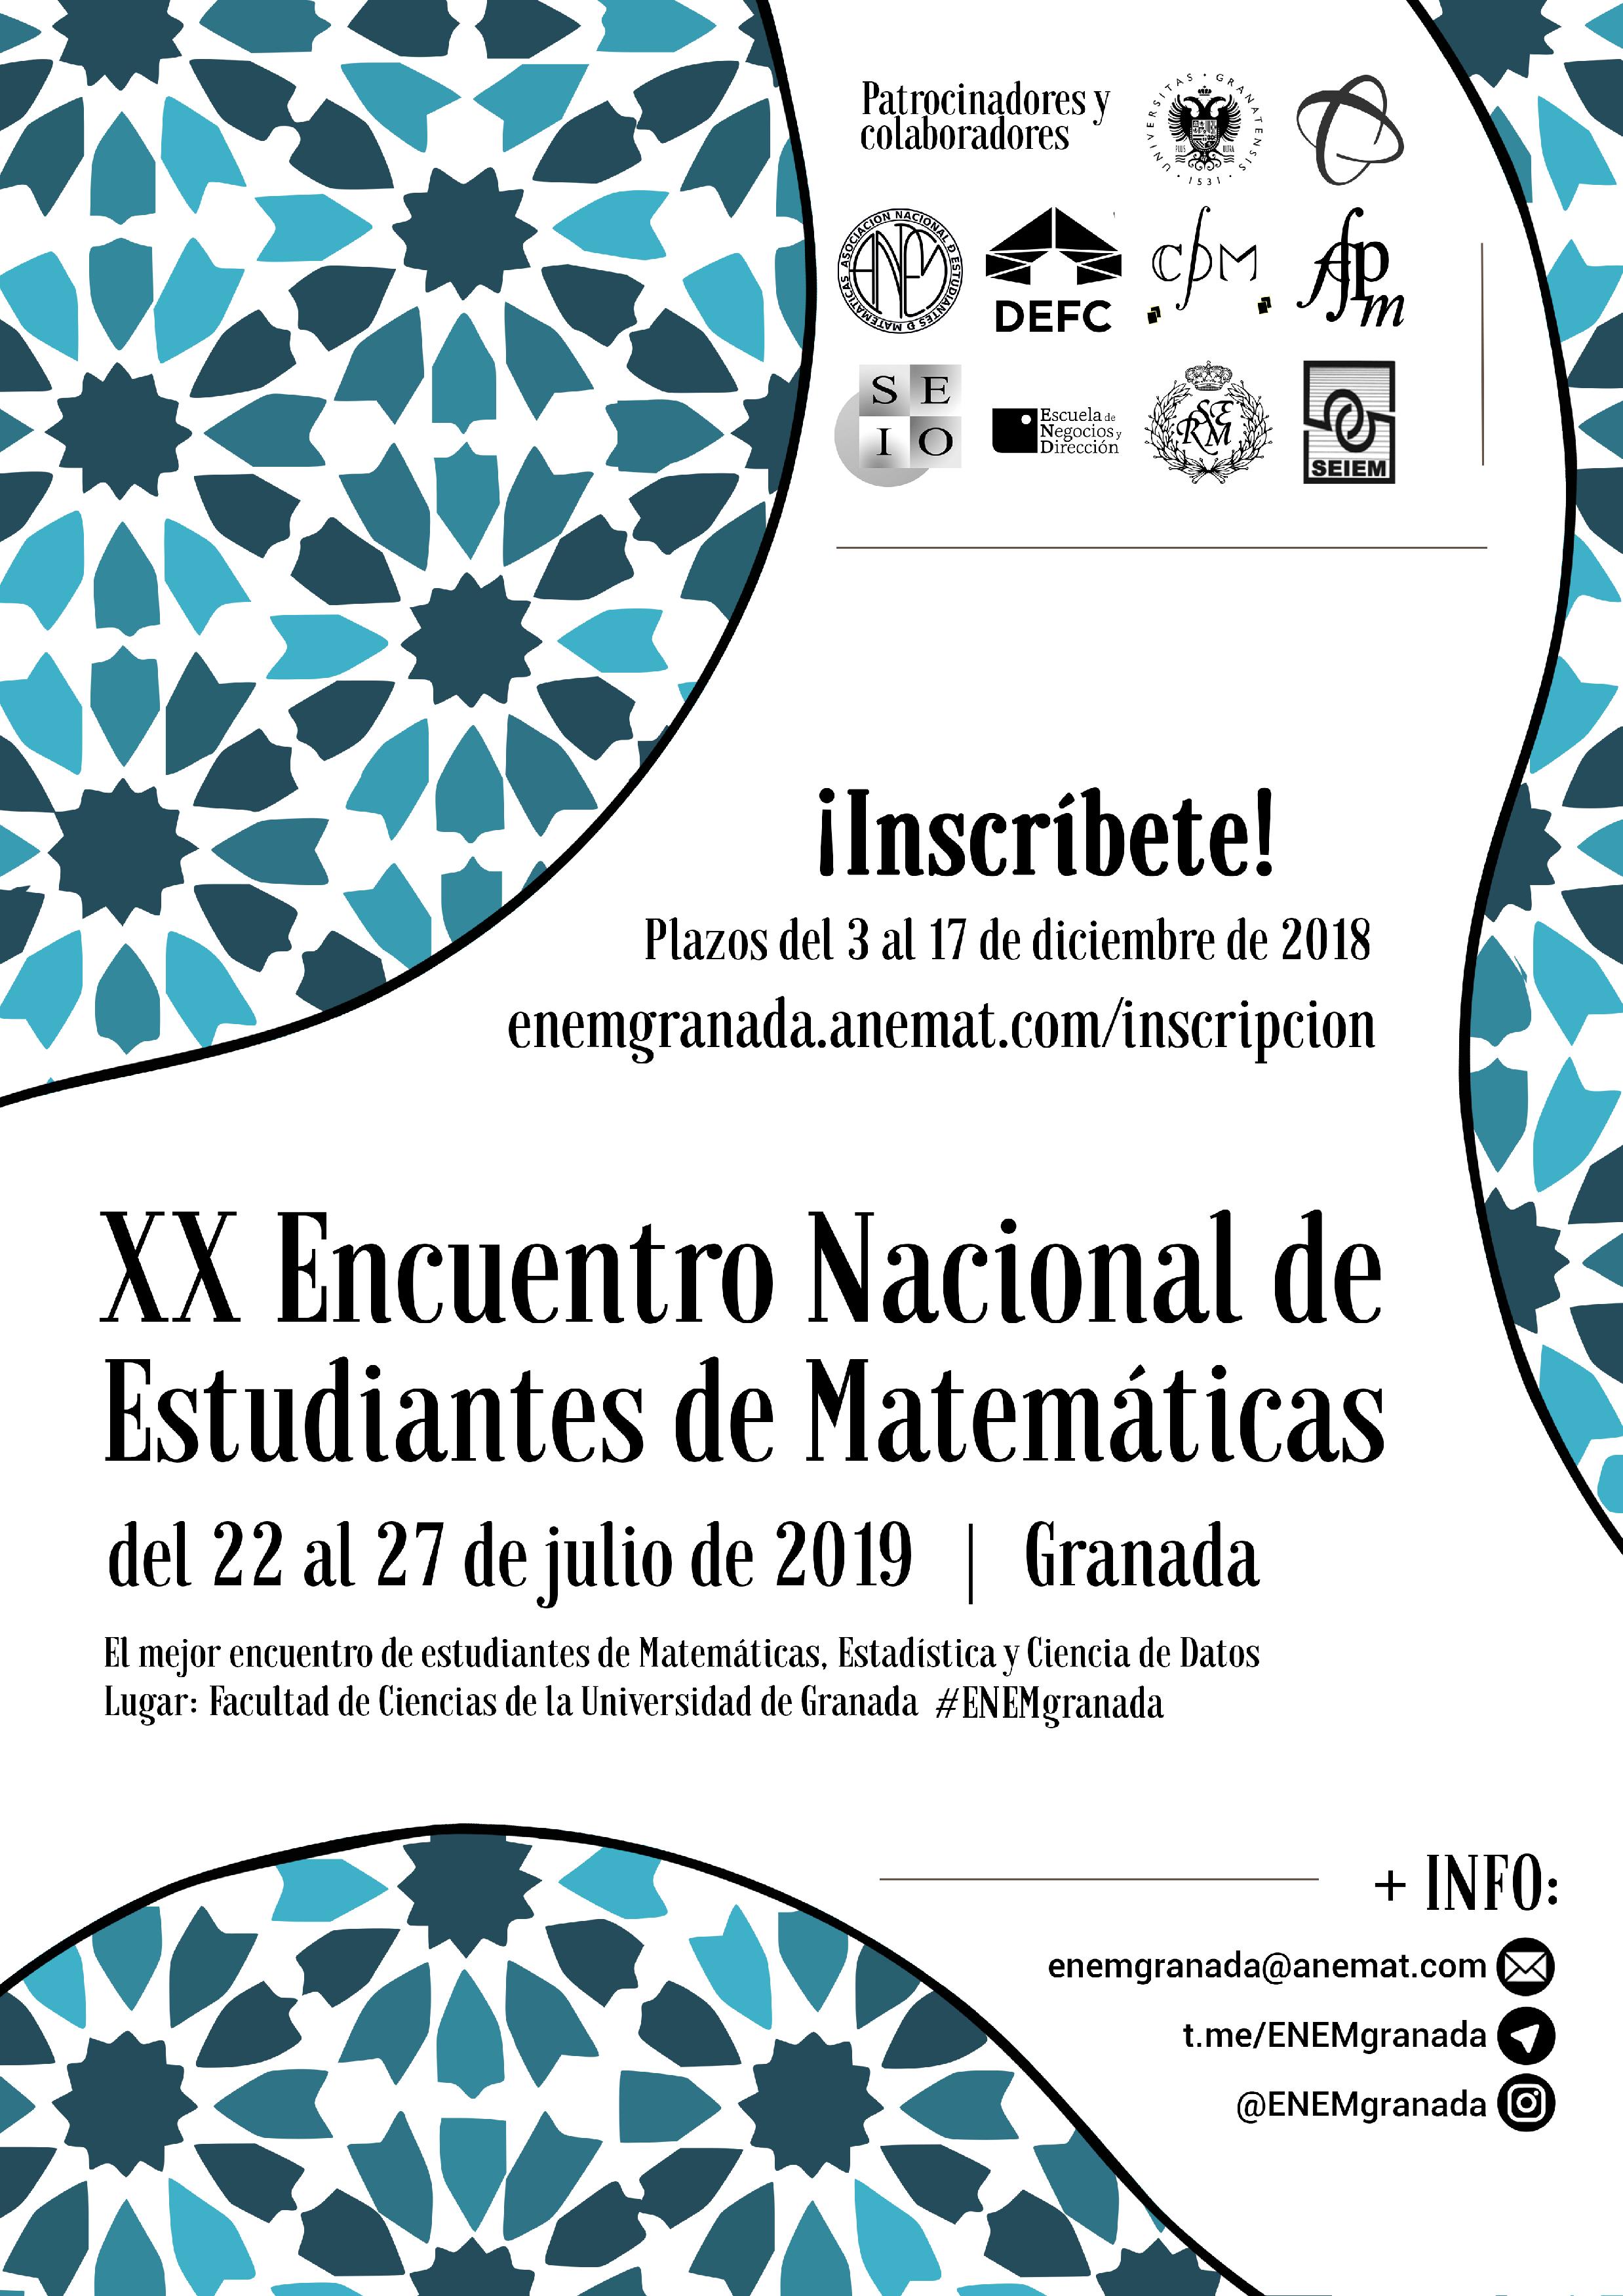 XX Encuentro Nacional de Estudiantes de Matemáticas 2019